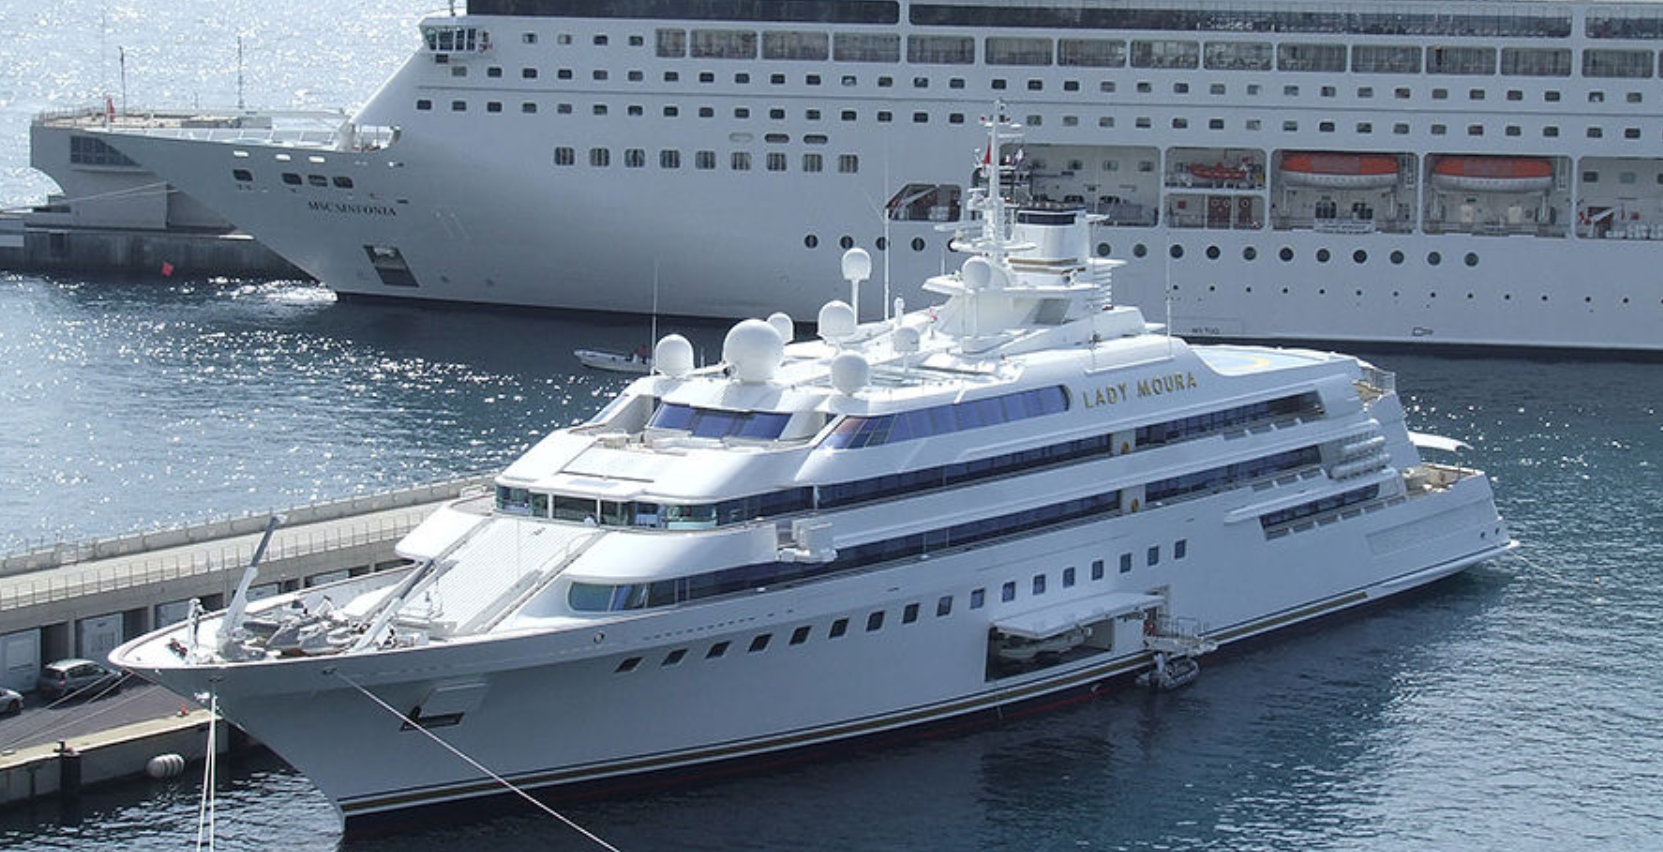 Яхта Lady Moura стоит 210 миллионов долларов